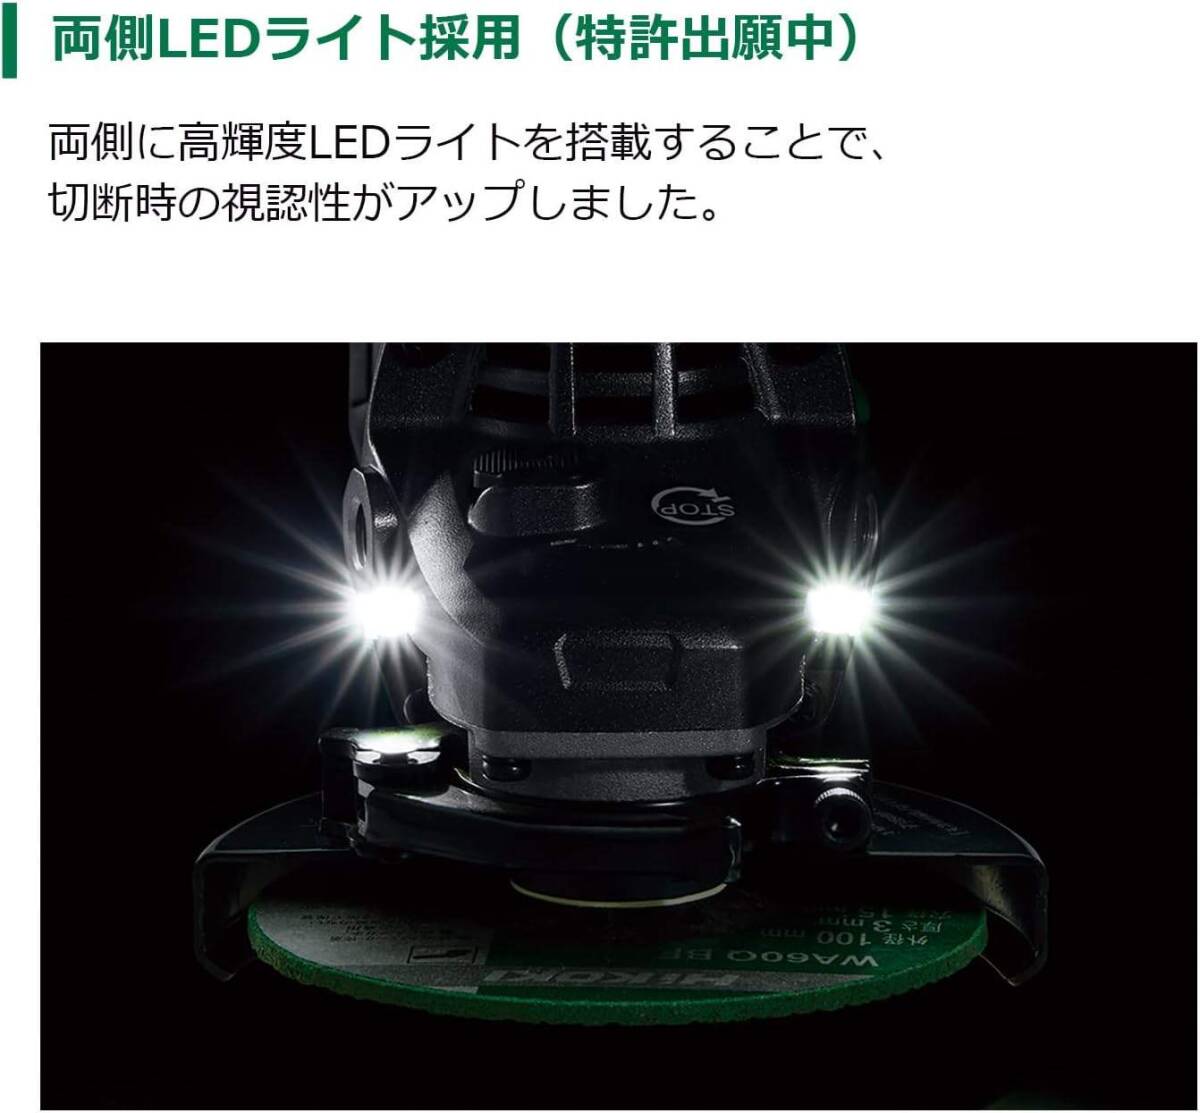 新品■HiKOKI(ハイコーキ) 36V 充電式ディスクグラインダ パドルスイッチ 砥石径125mm 新バッテリー2個・充電器・ケース付 G3613DD(2XPZ)_画像6